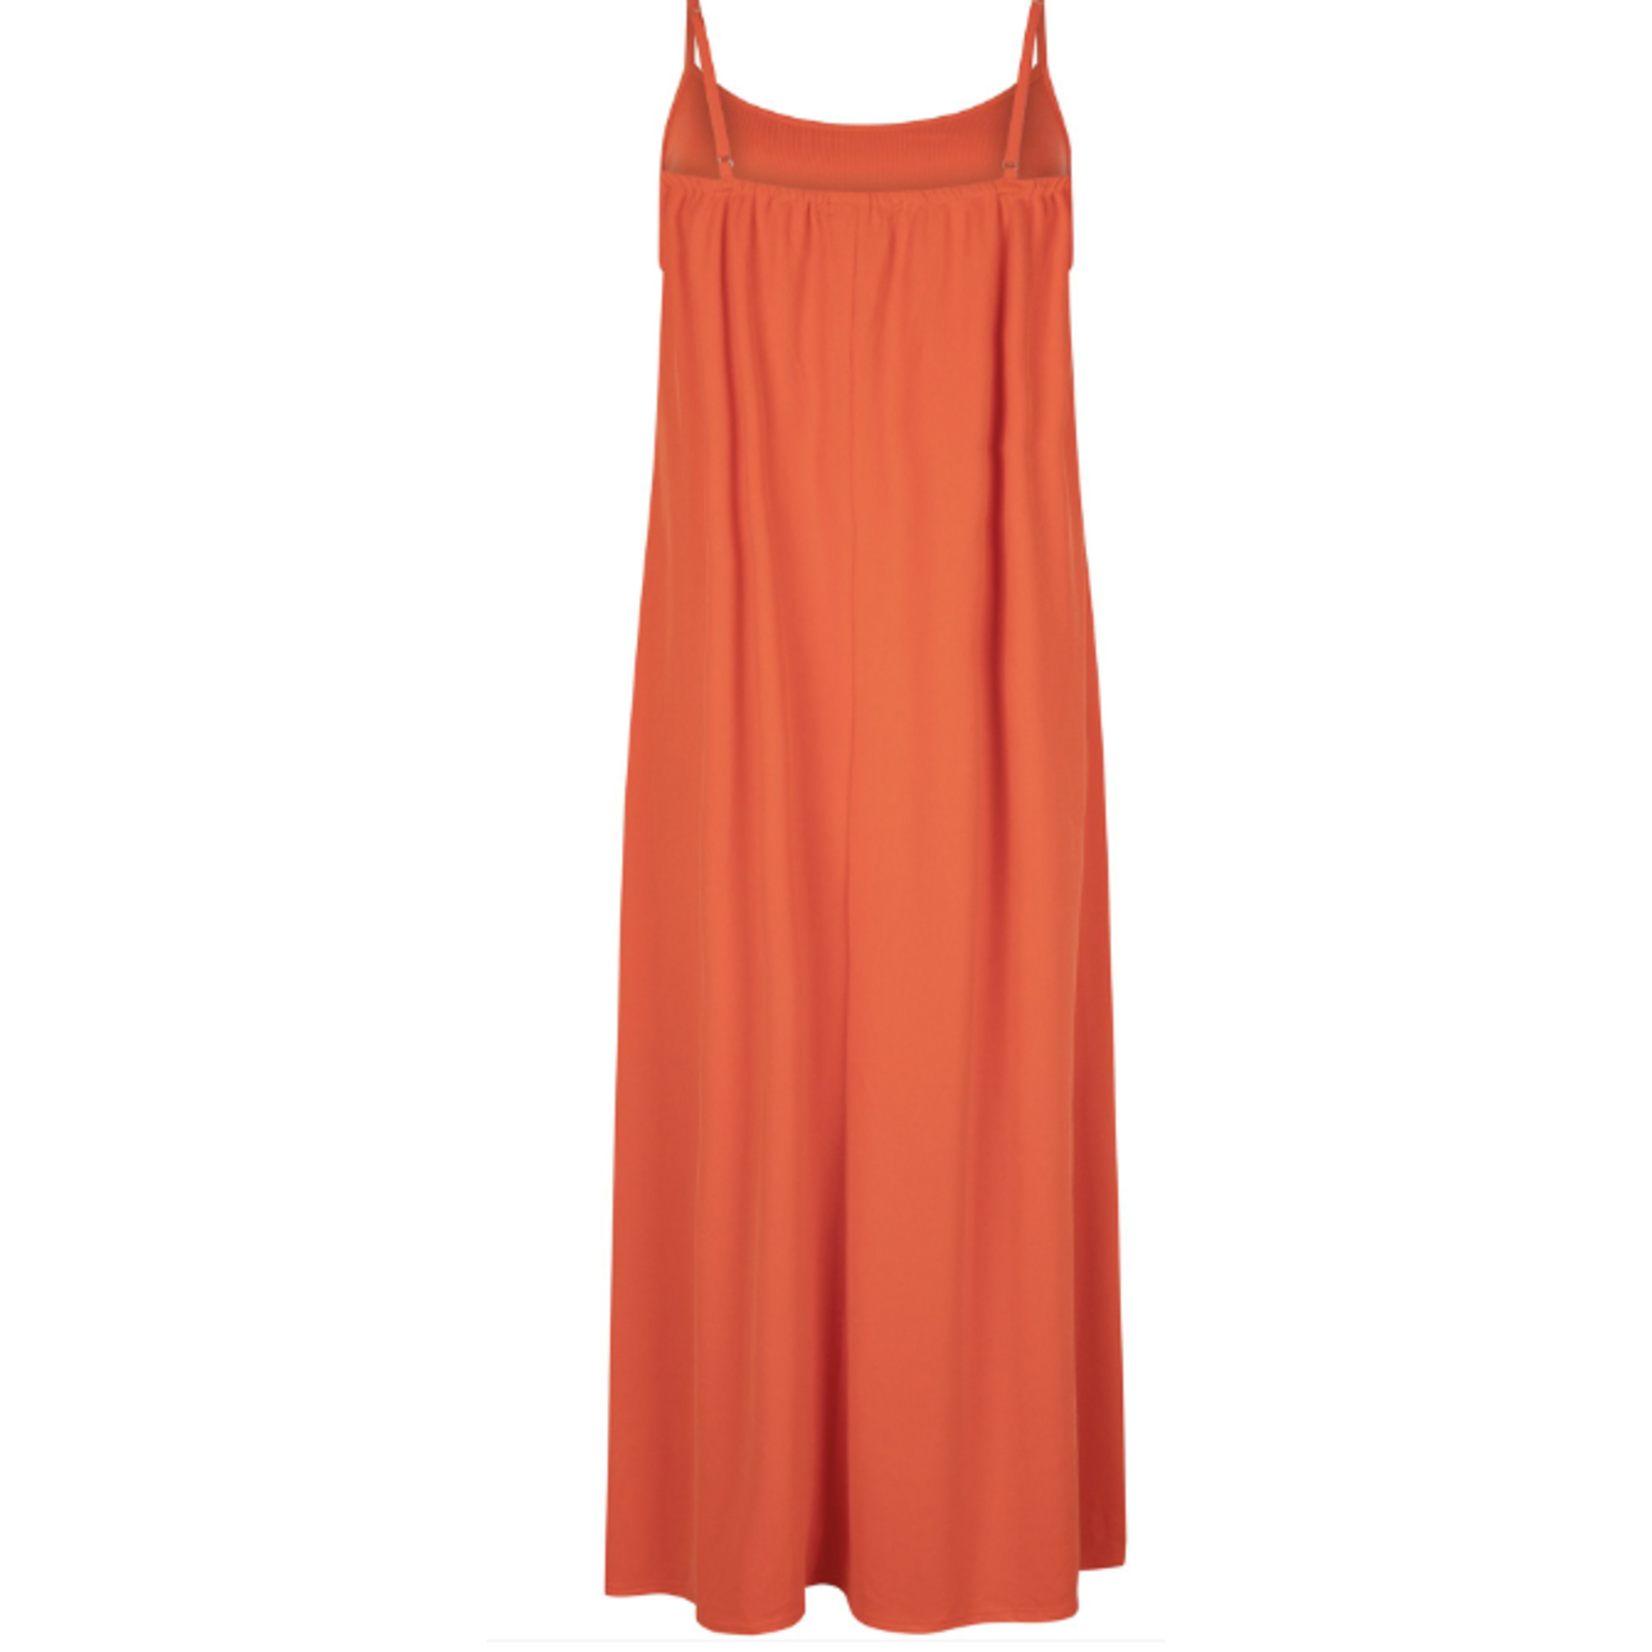 Ydence Koraal rode maxi dress voor de zomer - ook in een mooie print